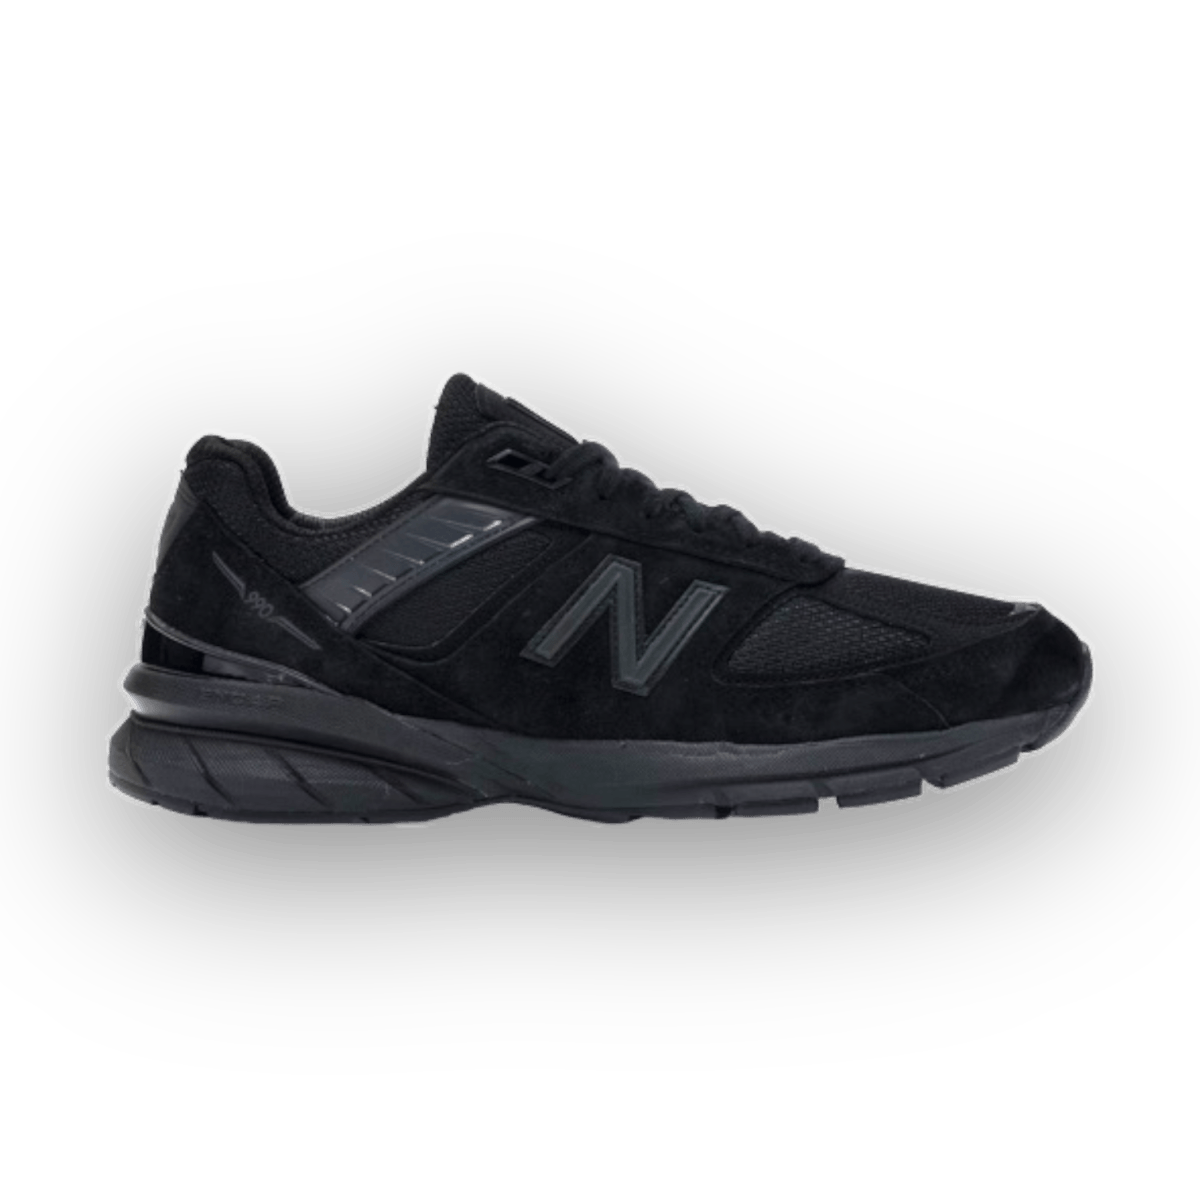 New Balance 990v5 - Triple Black - Low Sneaker - Jawns on Fire Sneakers & Streetwear